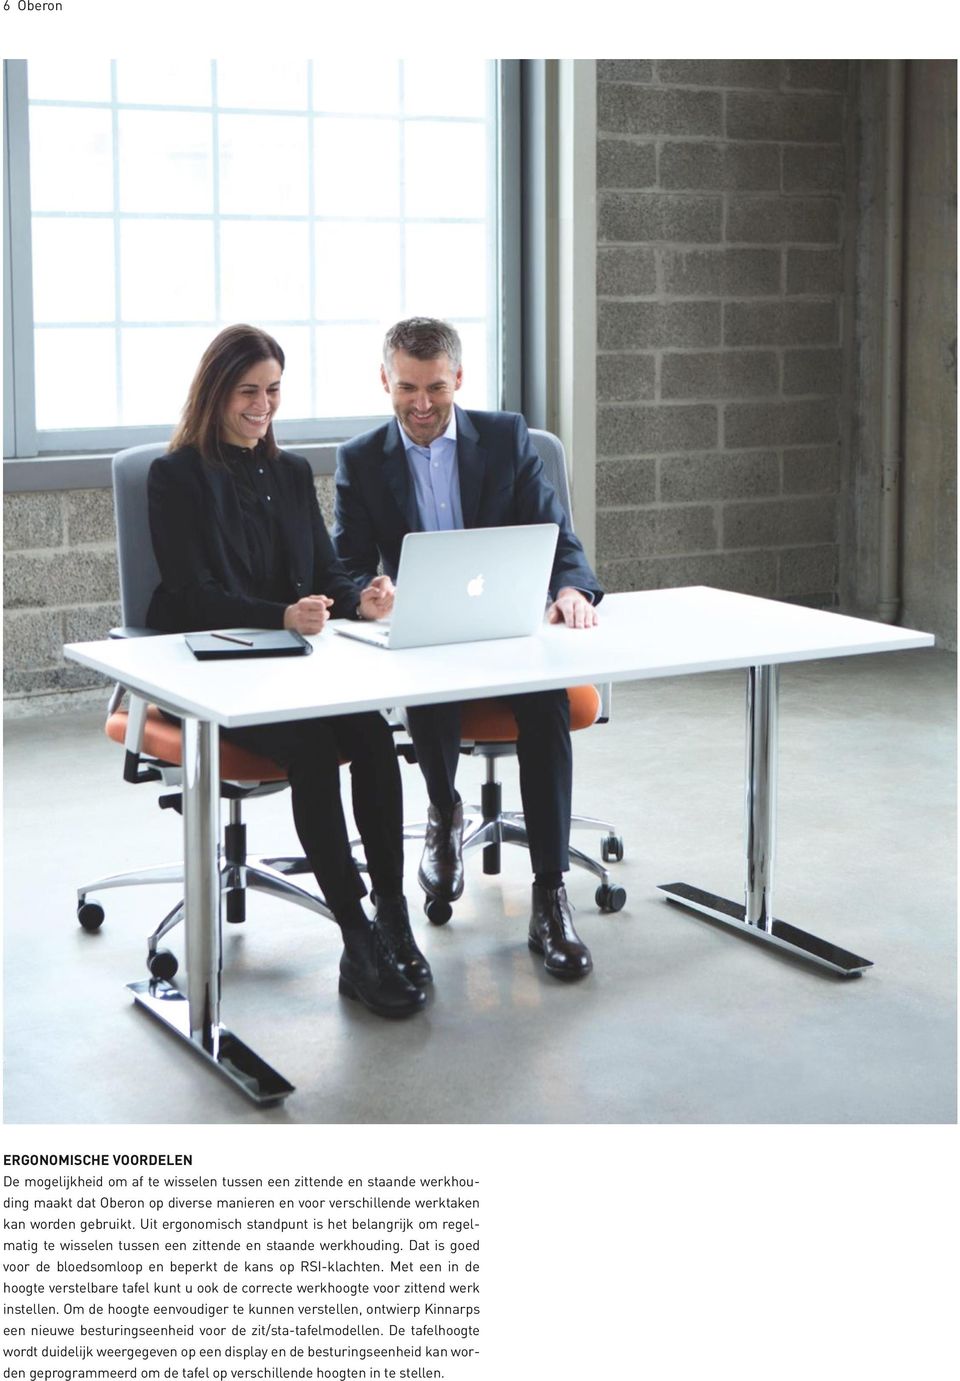 Met een in de hoogte verstelbare tafel kunt u ook de correcte werkhoogte voor zittend werk instellen.